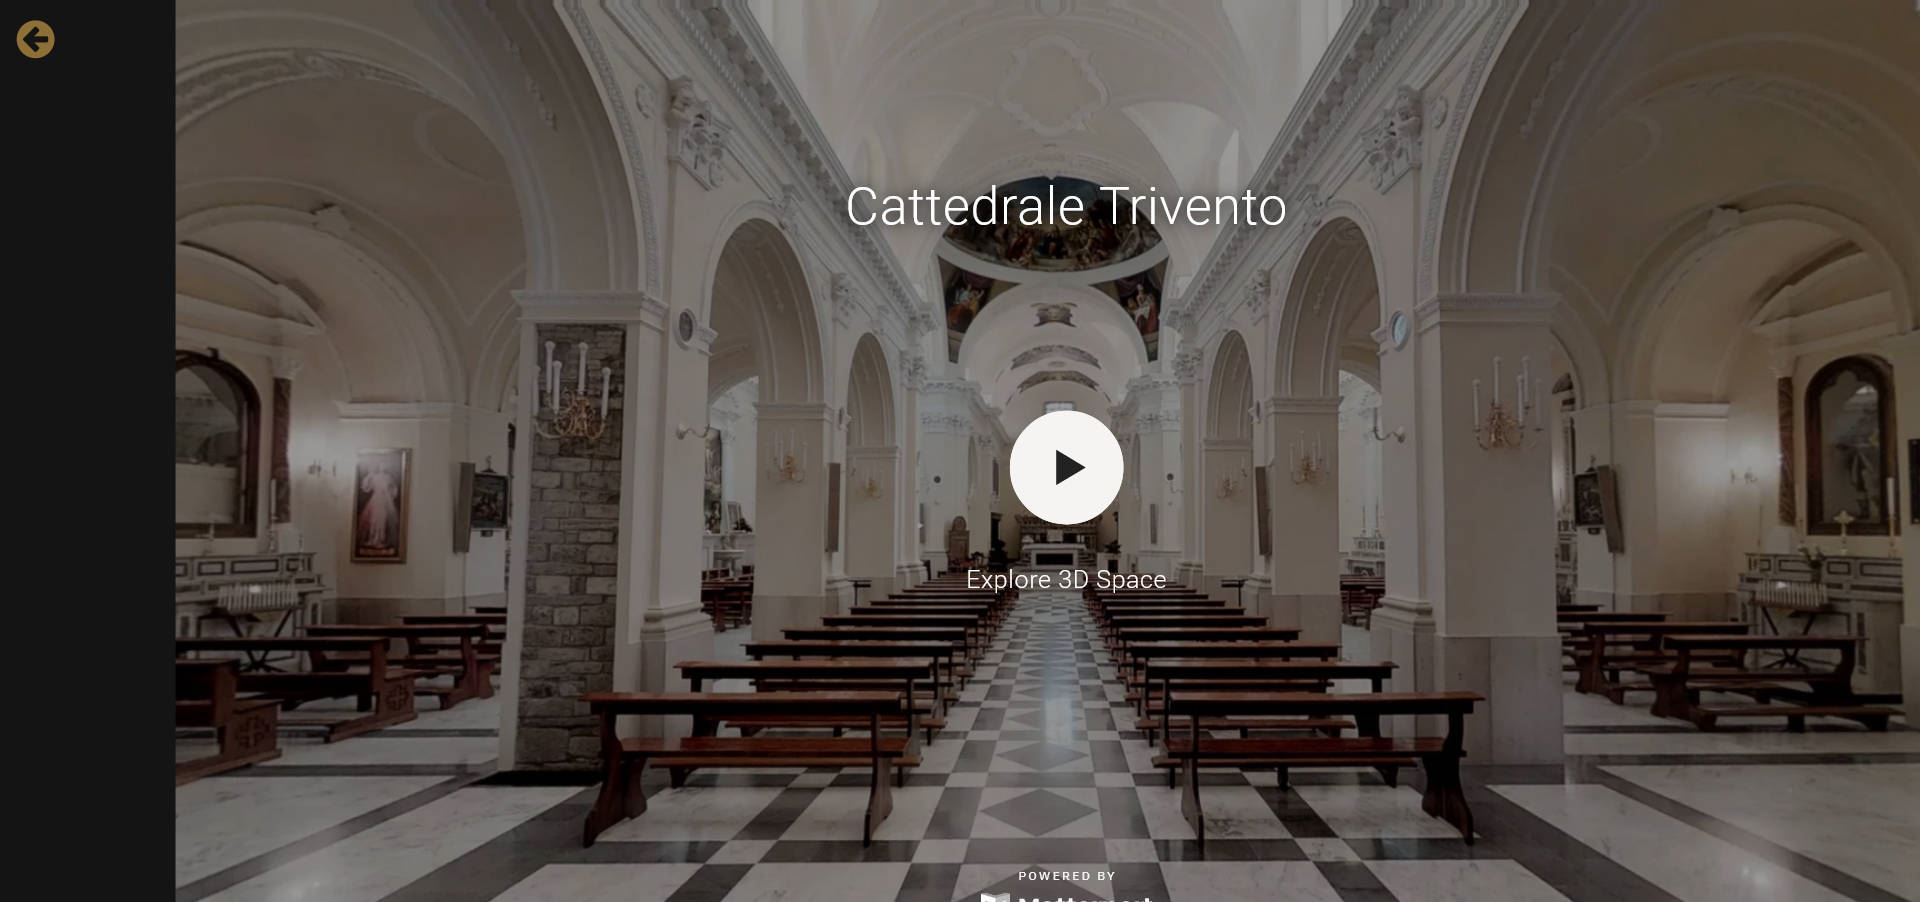 Tour virtuale cattedrale e cripta